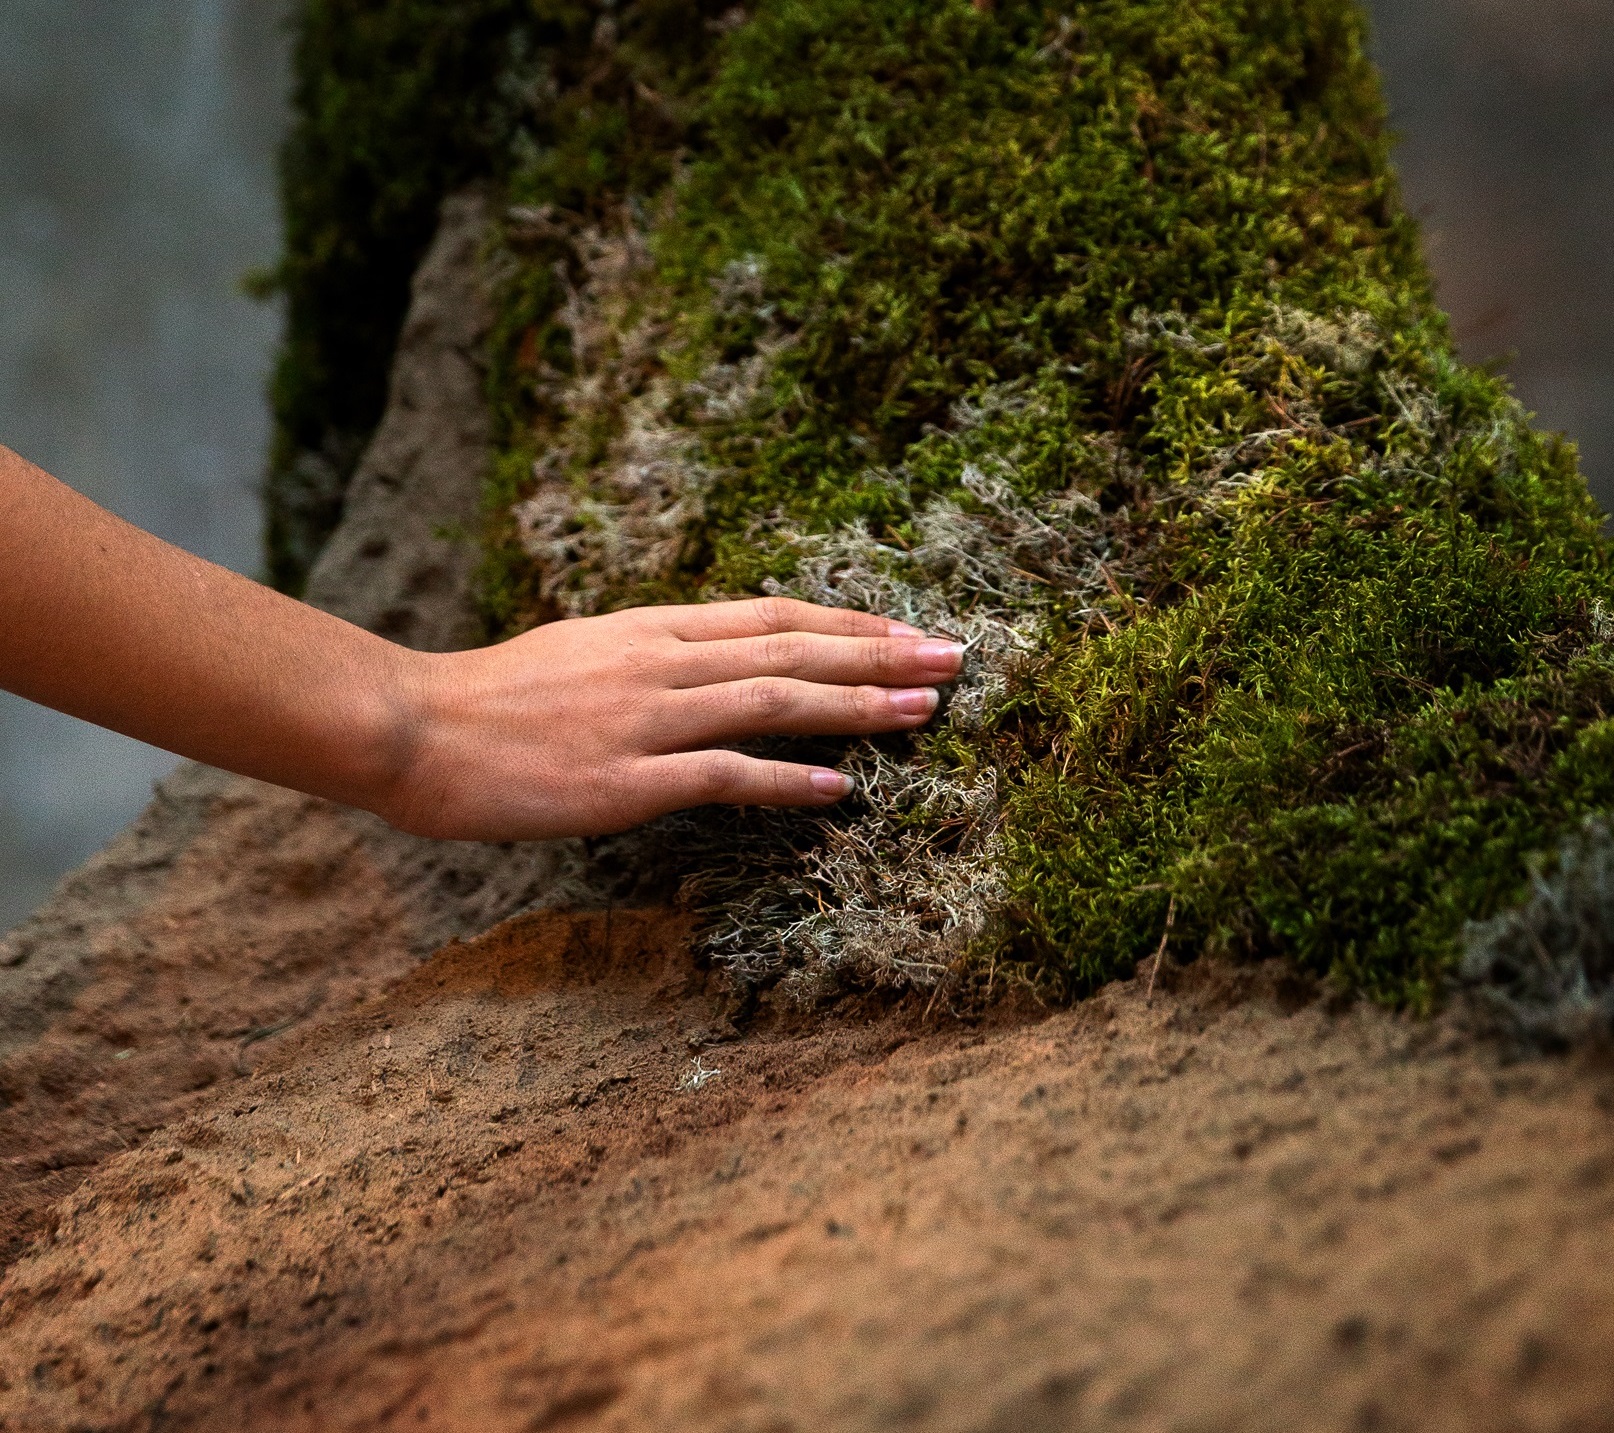 En hand känner på en skulptur som ser ut att vara gjord av gräs och mossa. 